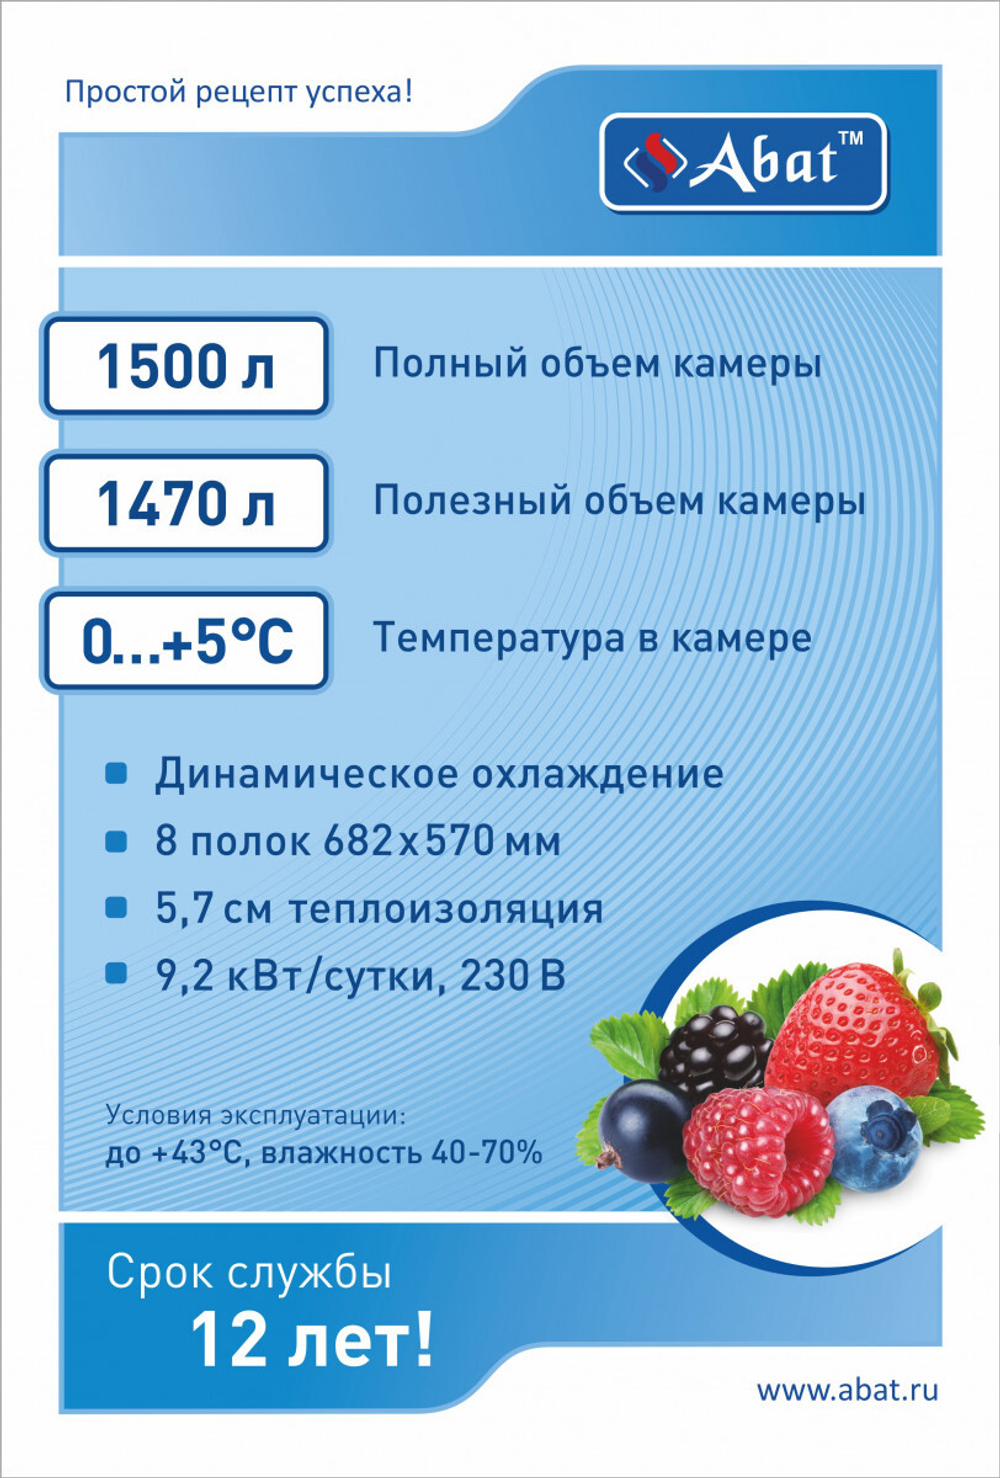 Шкаф холодильный среднетемпературный ШХс-1,4-02 краш. (нижний агрегат)